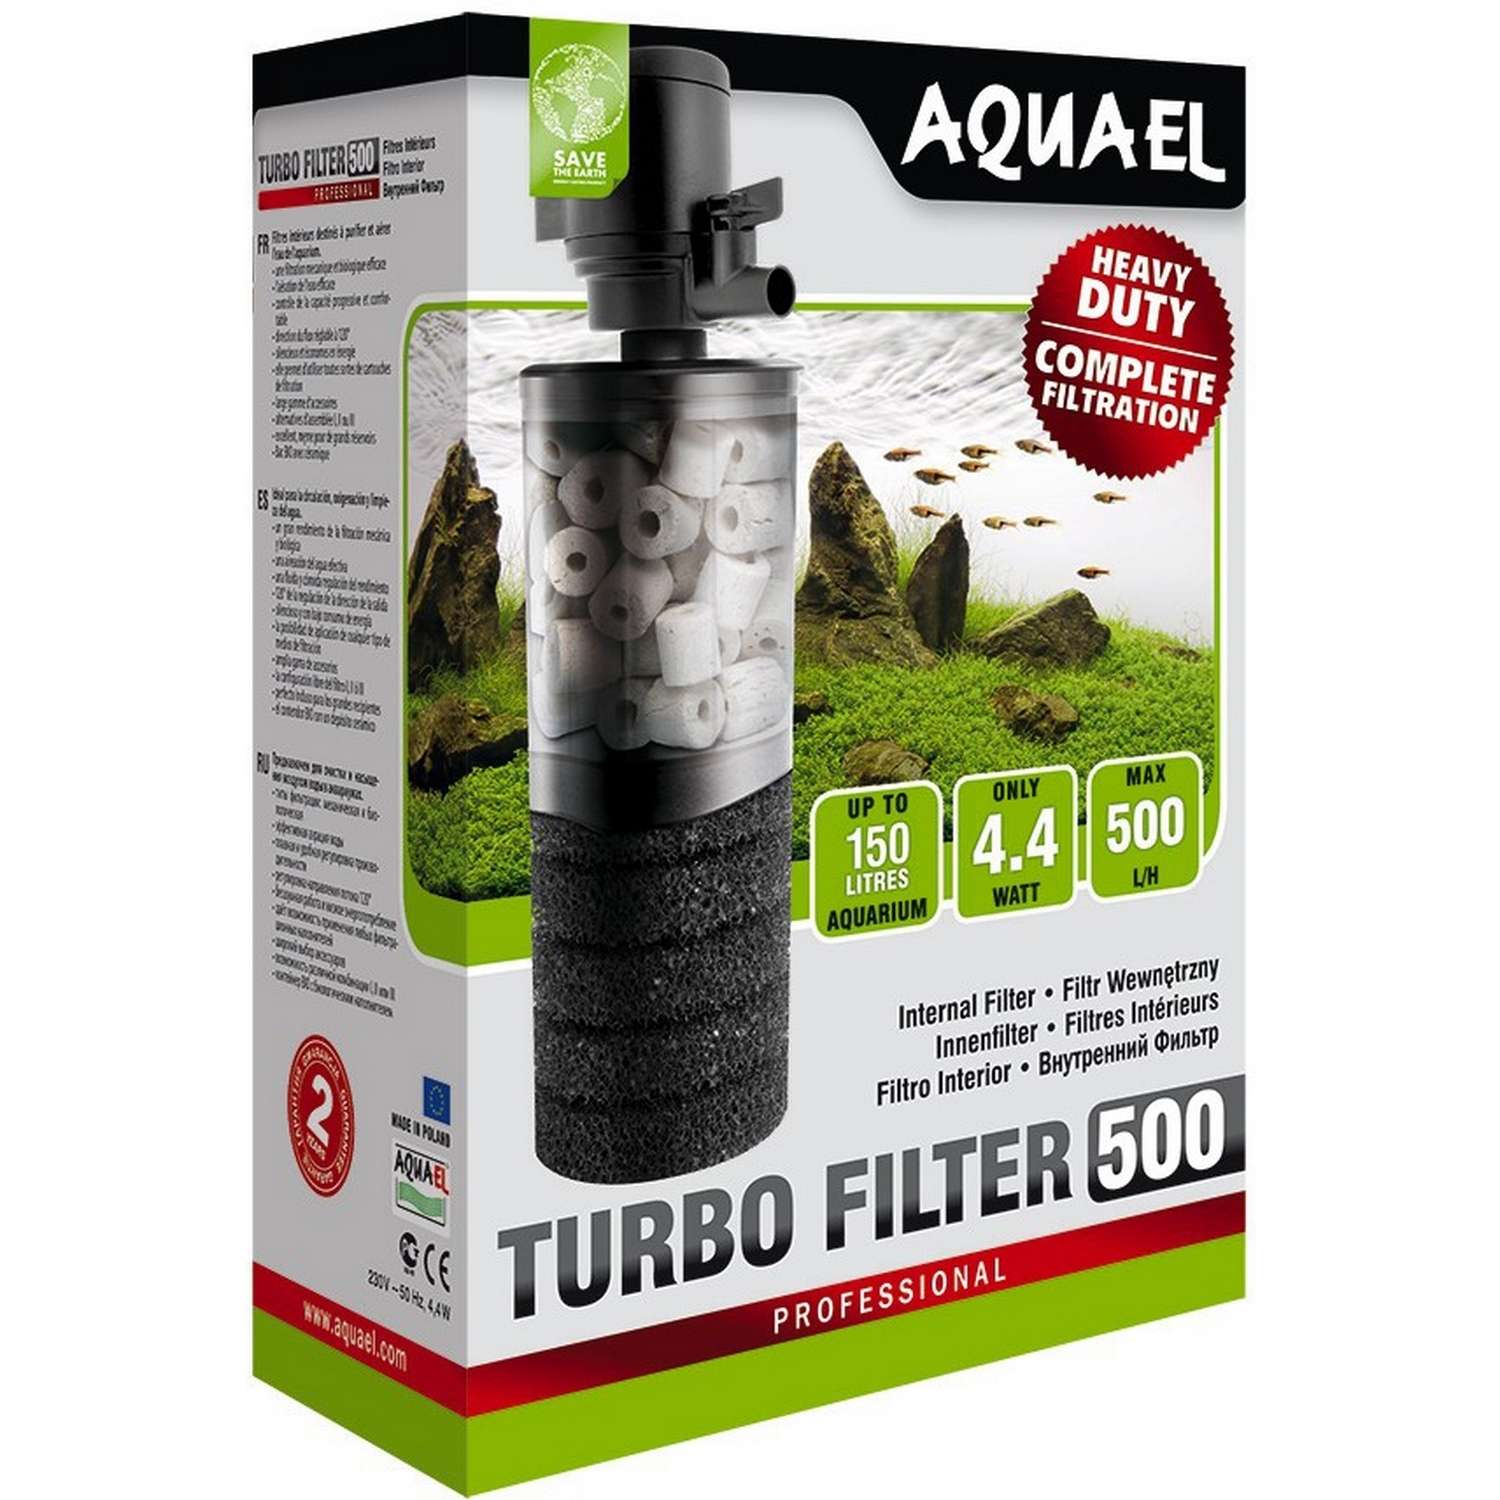 Фильтр для аквариумов AQUAEL Turbo Filter 500 внутренний 109401 - фото 2